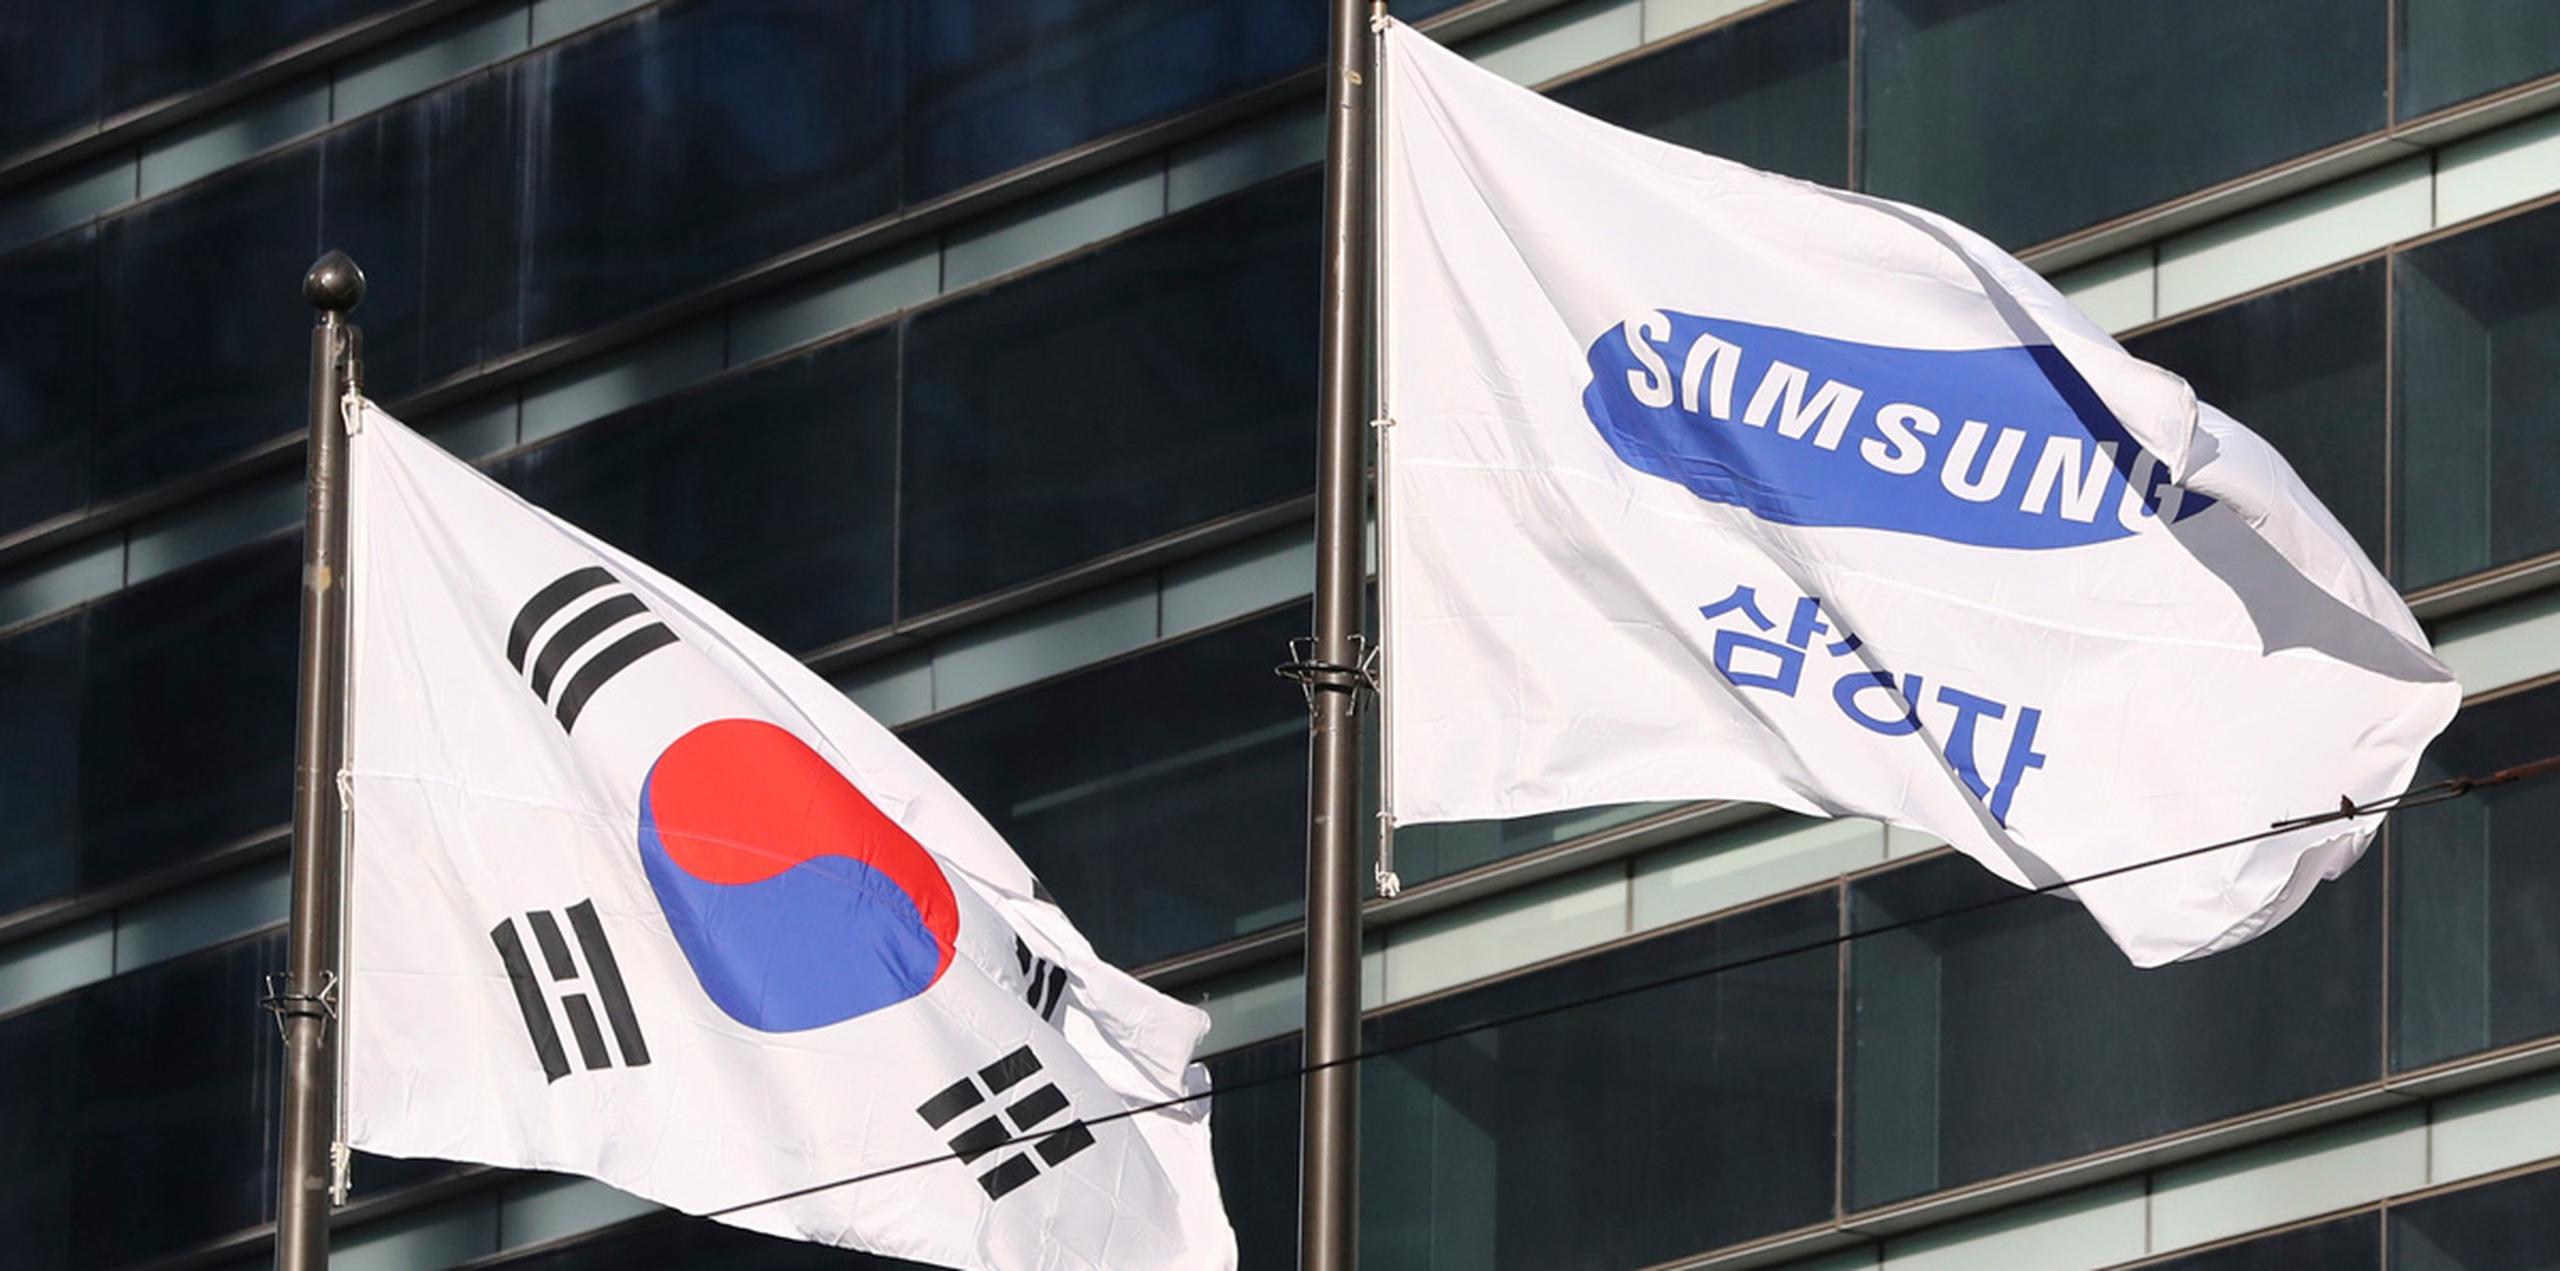 Una portavoz de Samsung informó el viernes que los planes están "apenas en la etapa de evaluación". (AP)